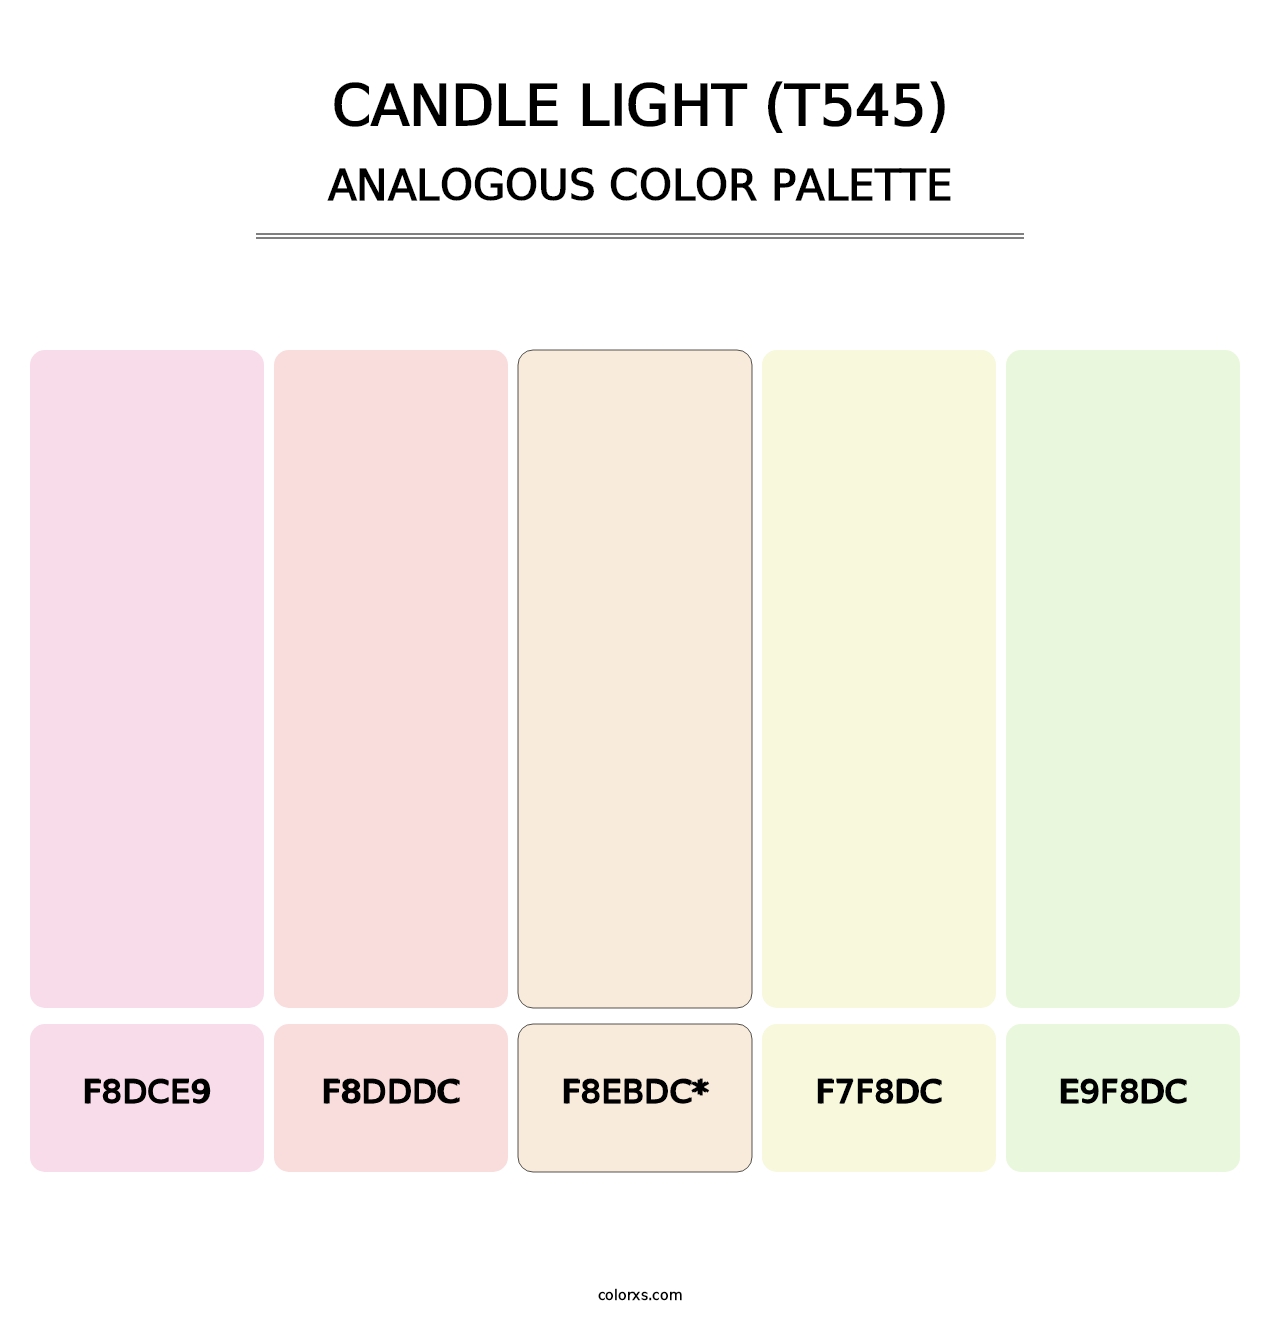 Candle Light (T545) - Analogous Color Palette